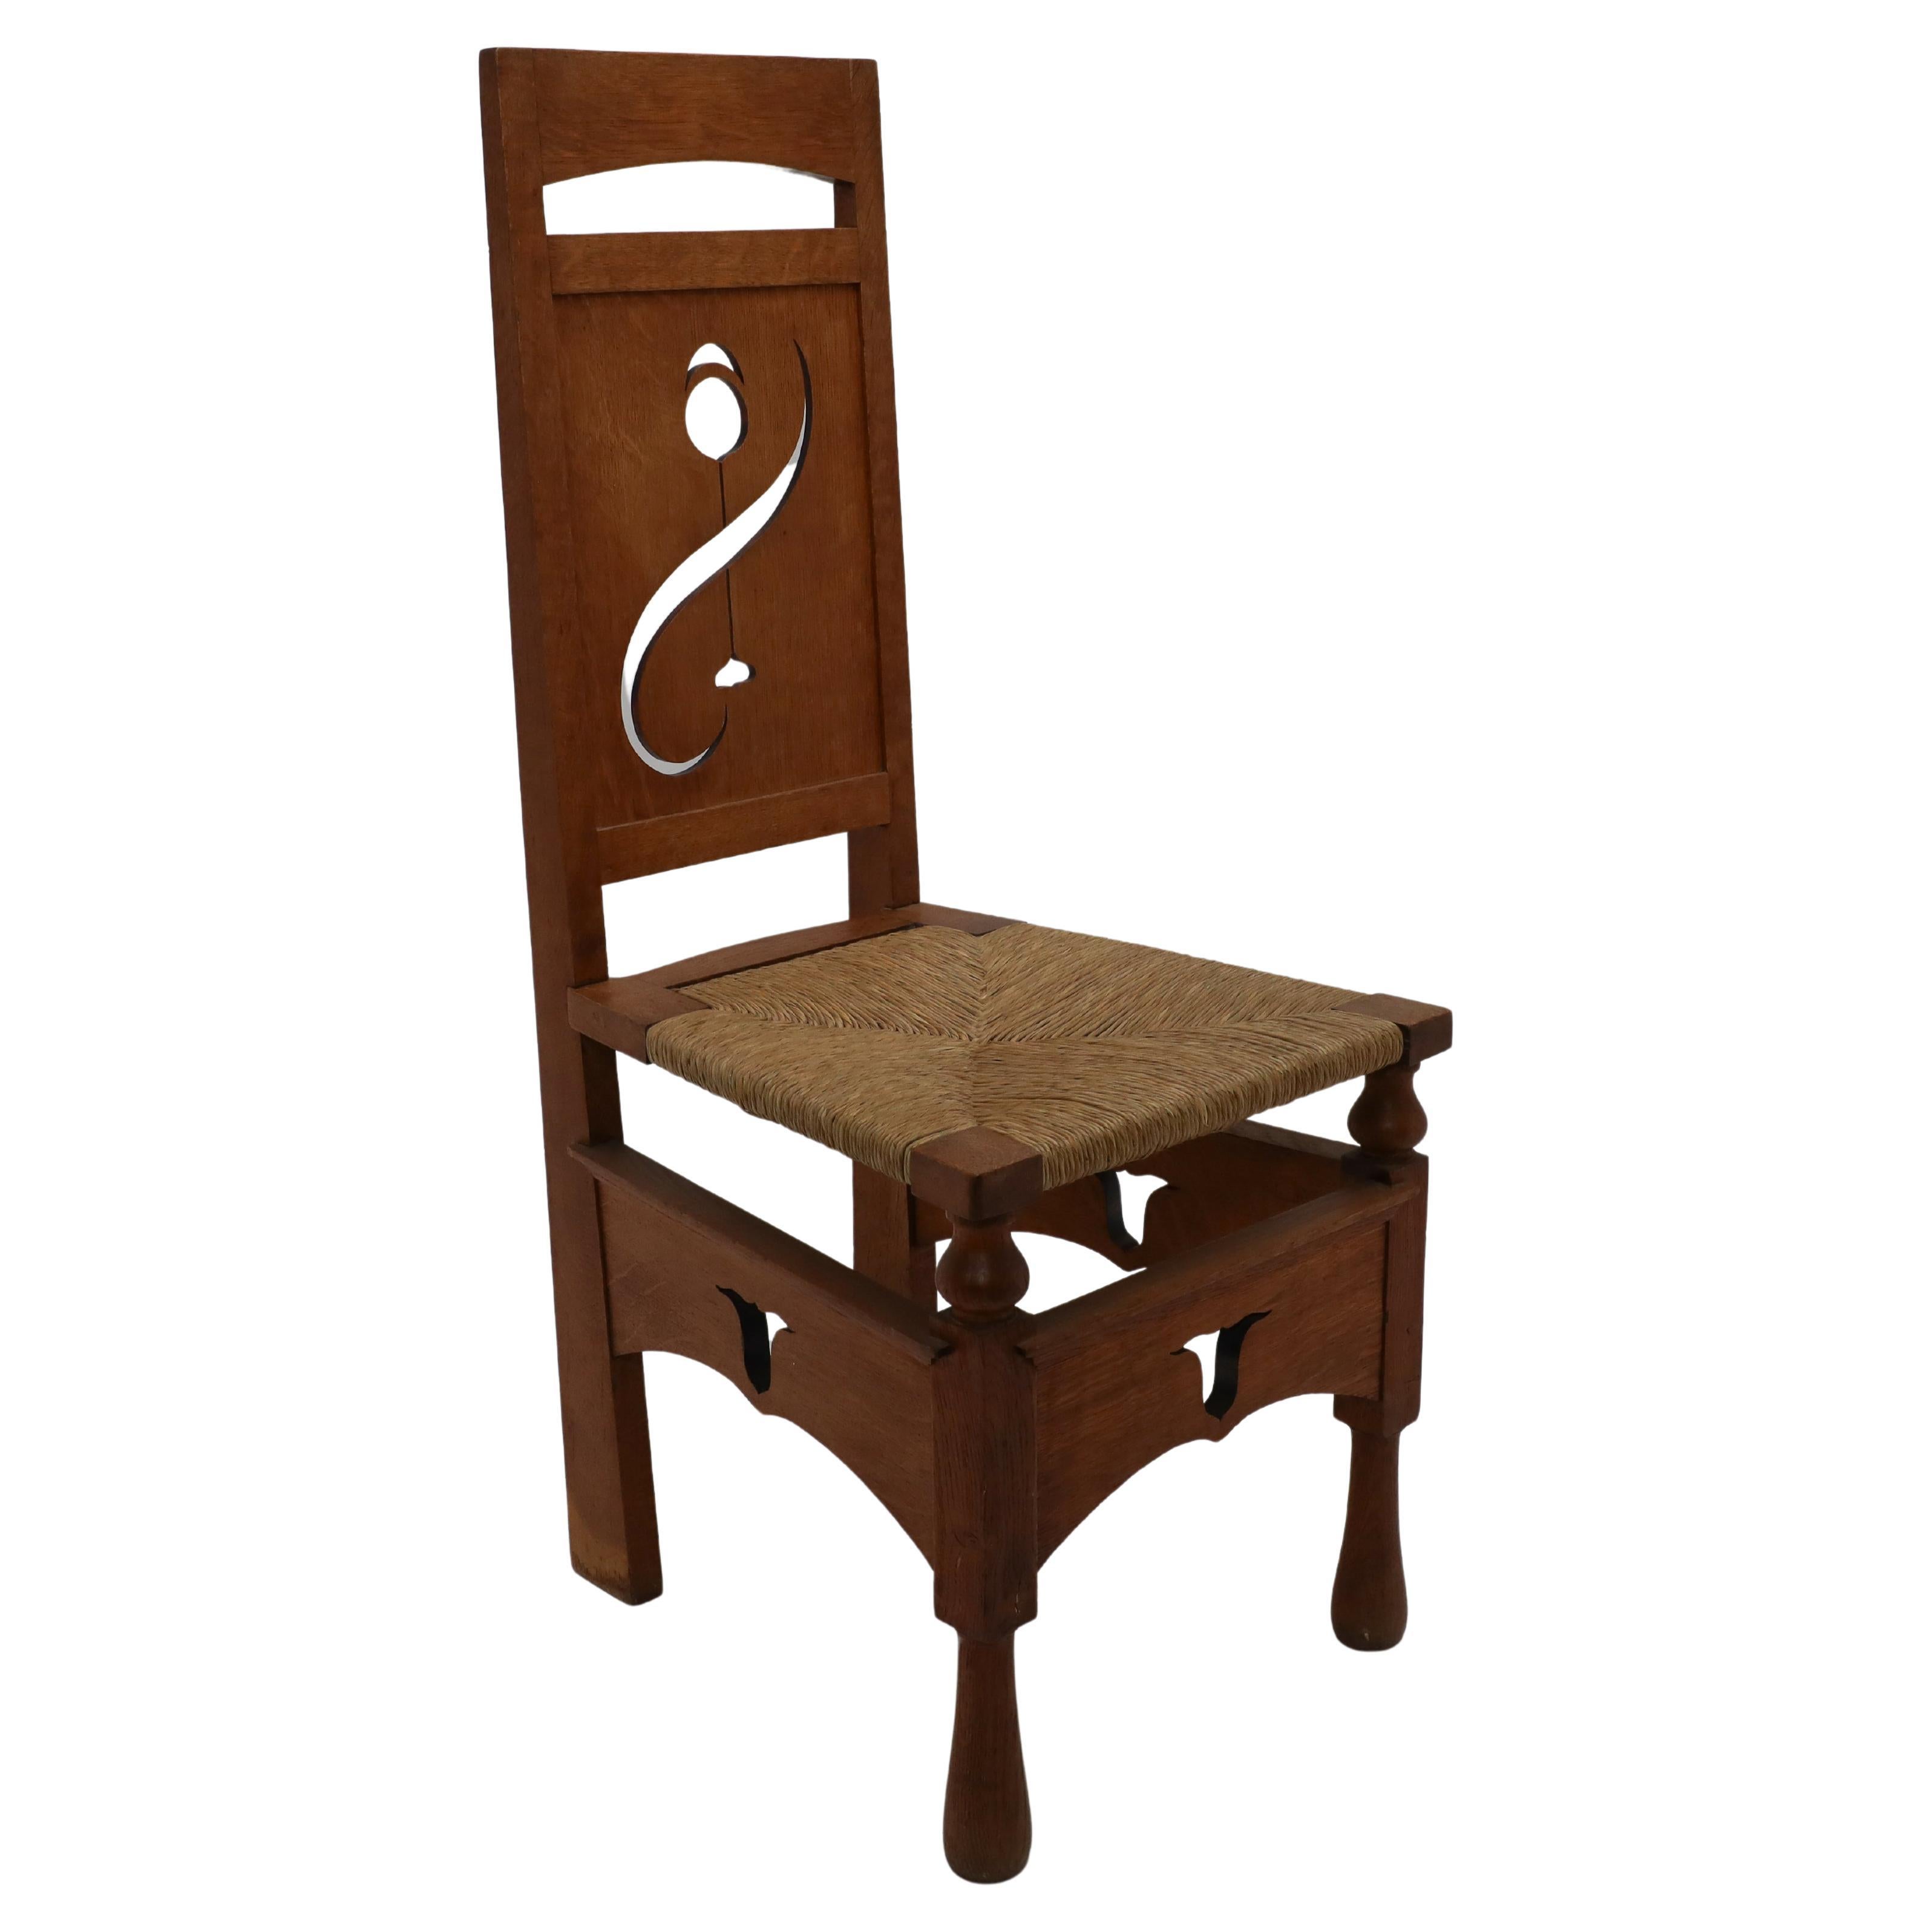 Une chaise en chêne attribué M H Baillie Scott Arts & Crafts avec des découpes florales stylisées